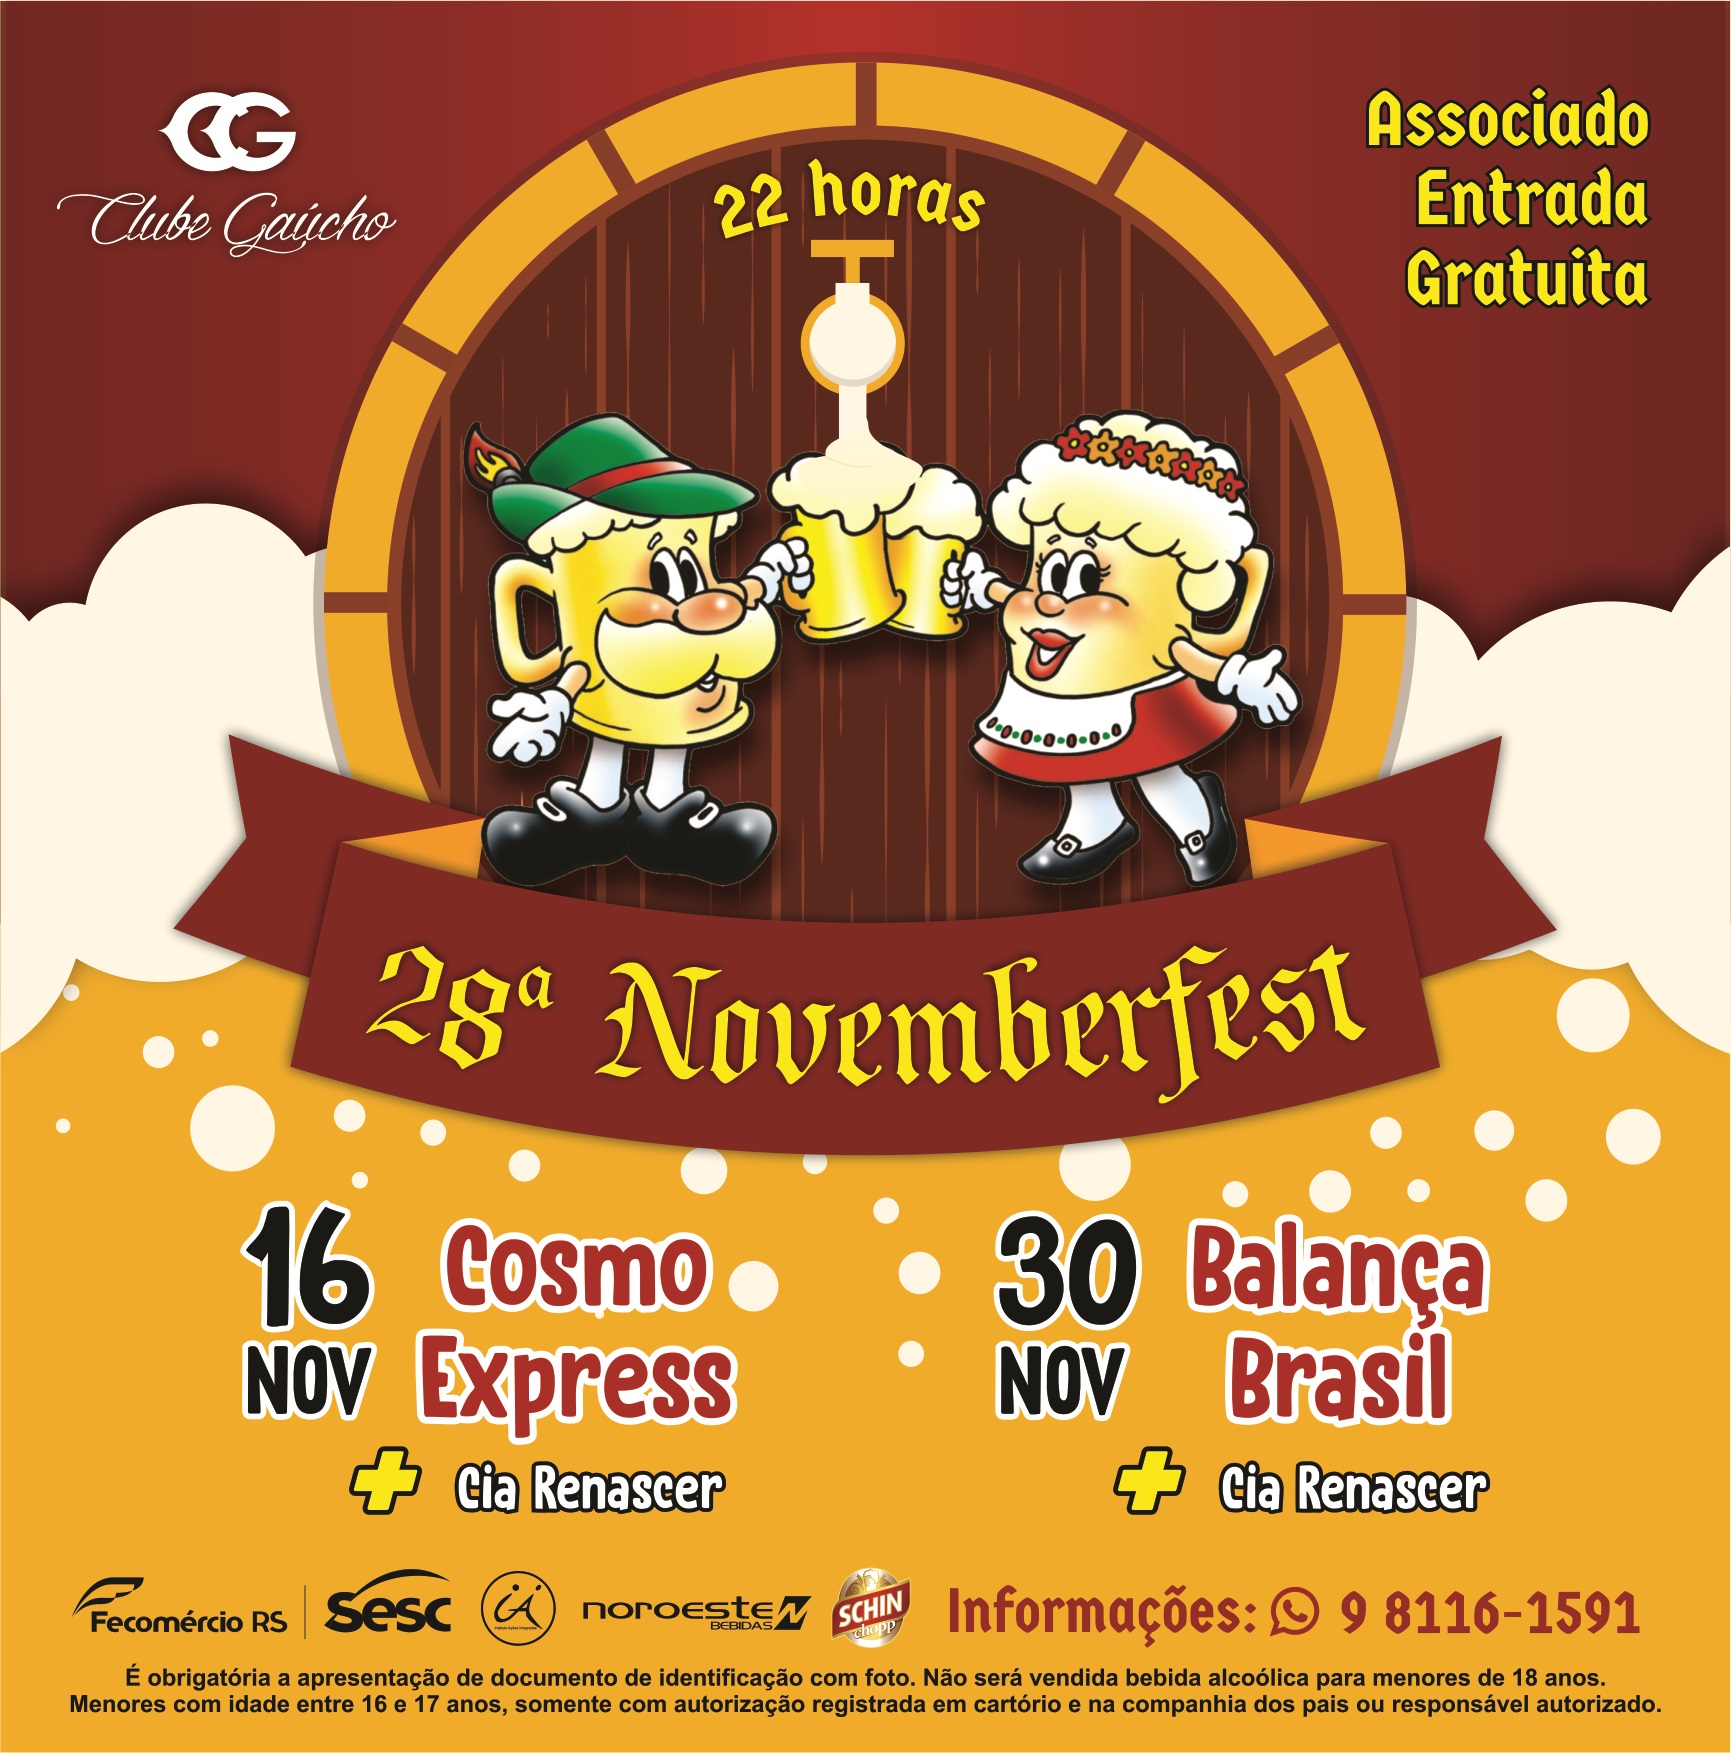 Save the date! 28ª Novemberfest!